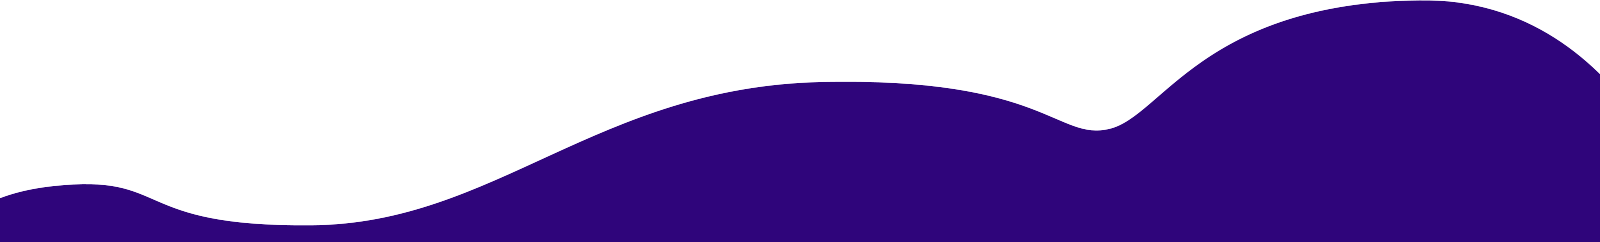  dark purple bottom background